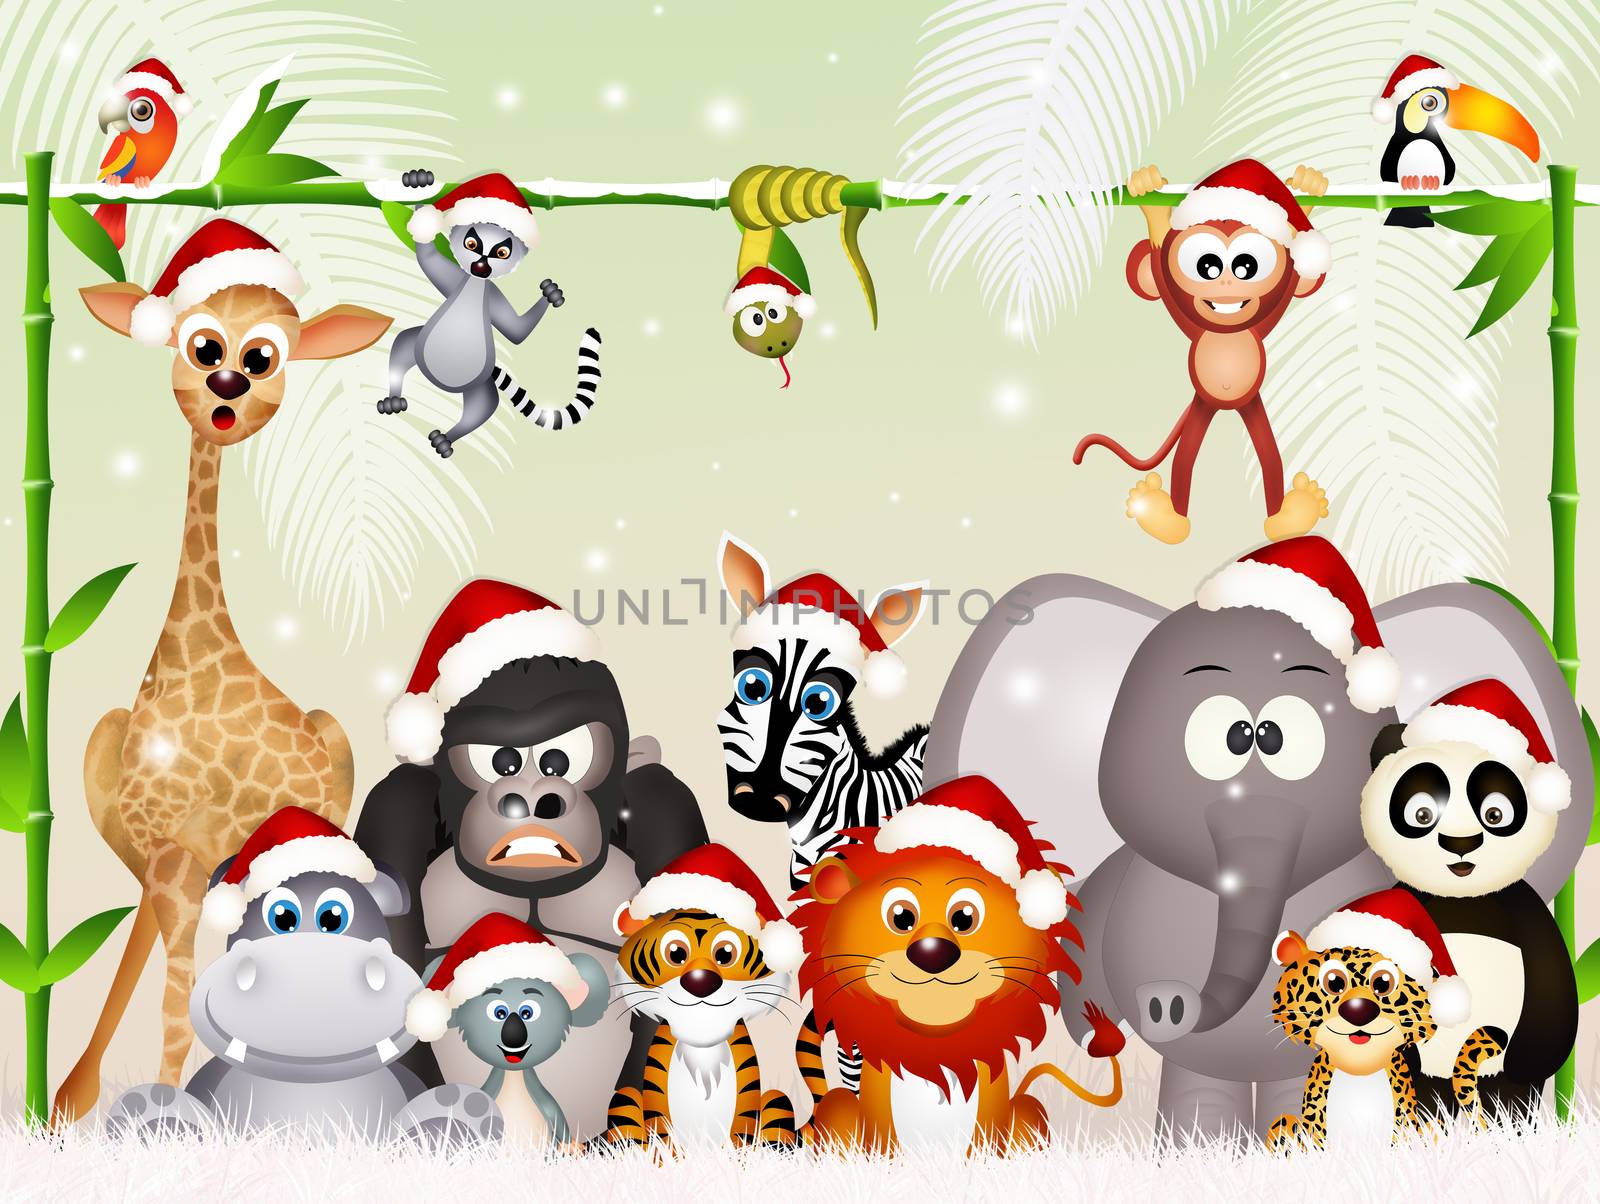 wild animals at Christmas by adrenalina